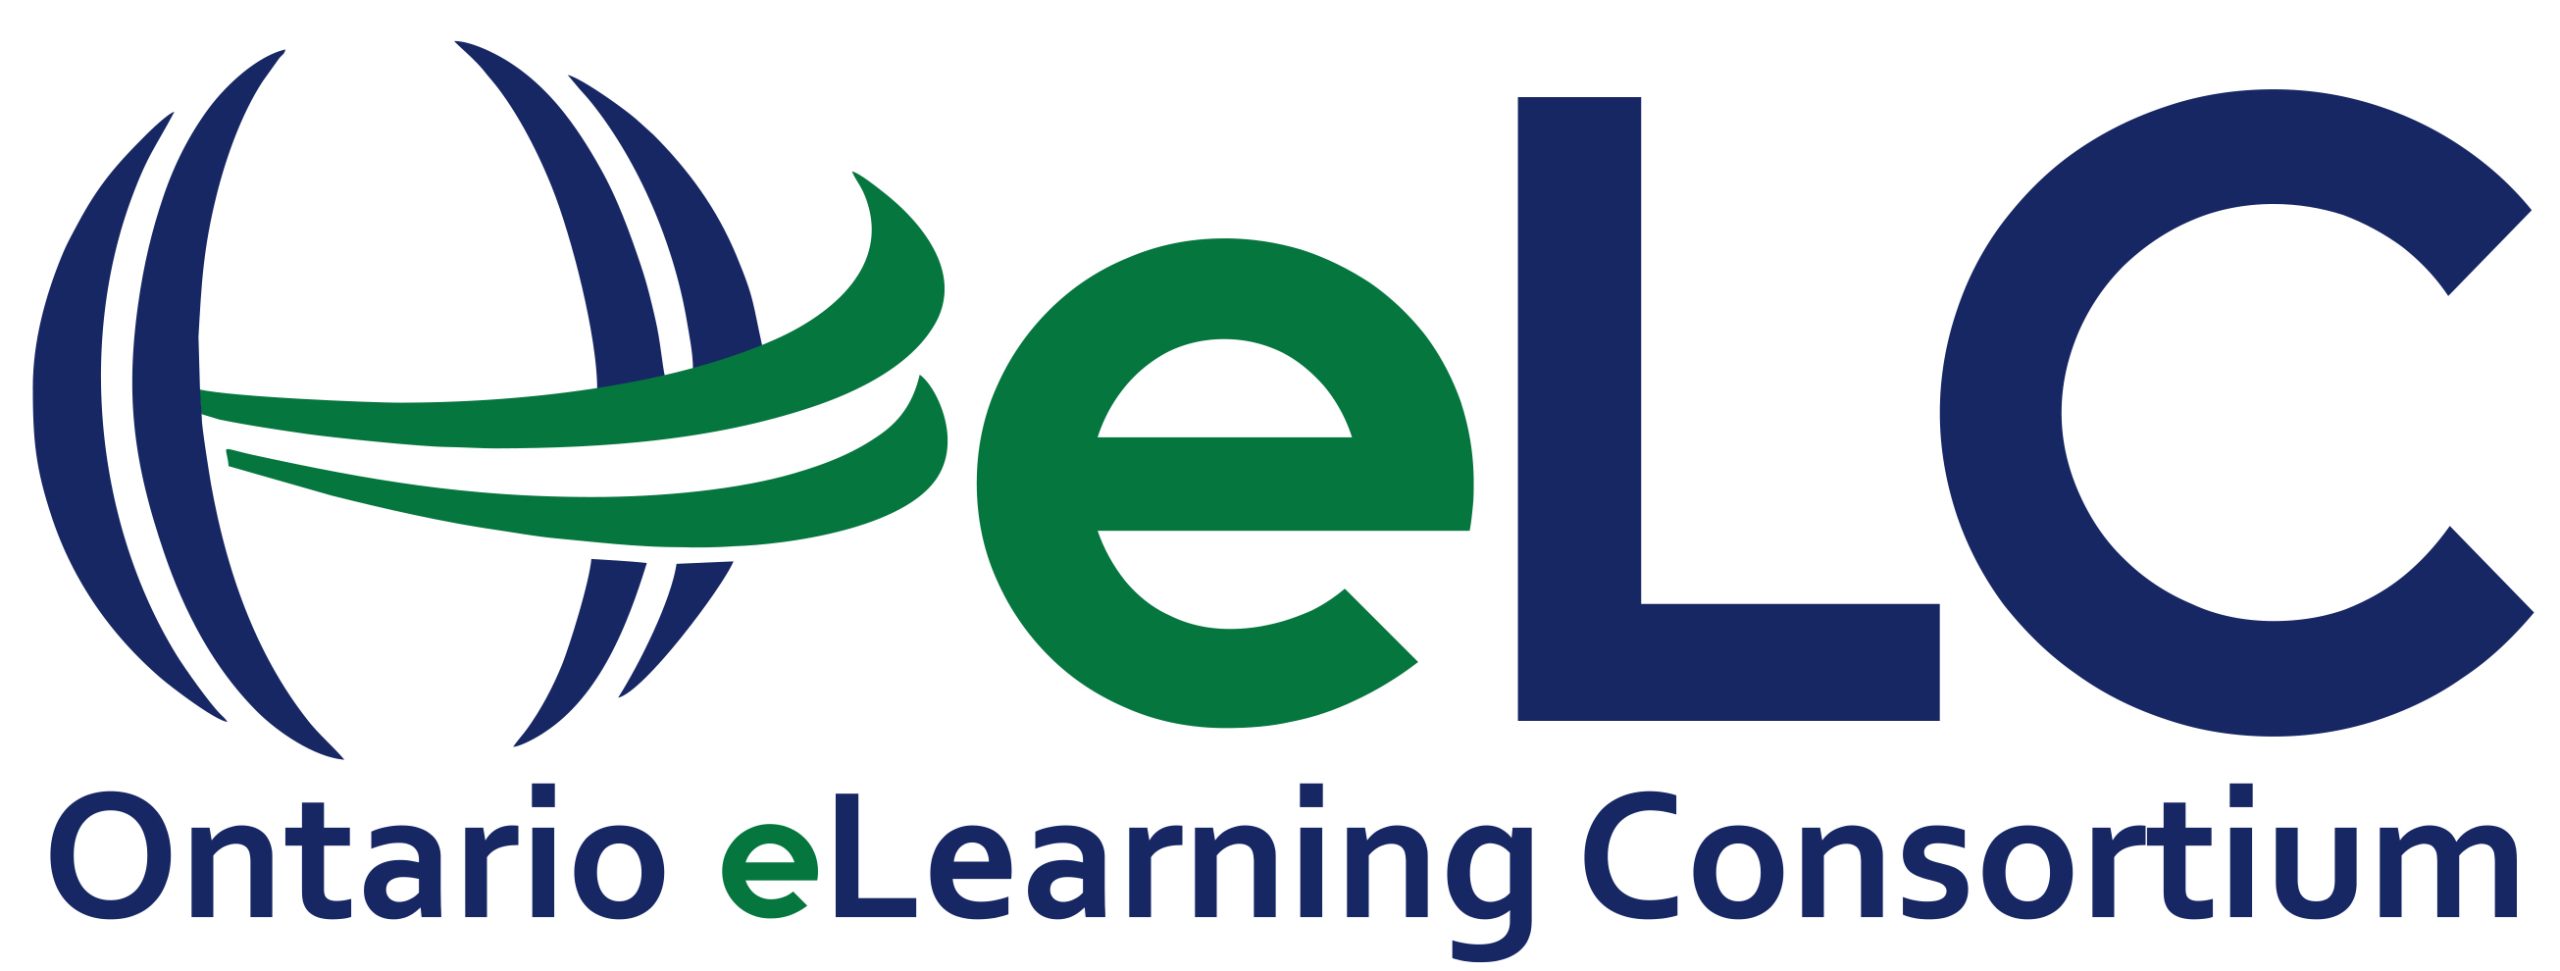 Ontario eLearning Consortium